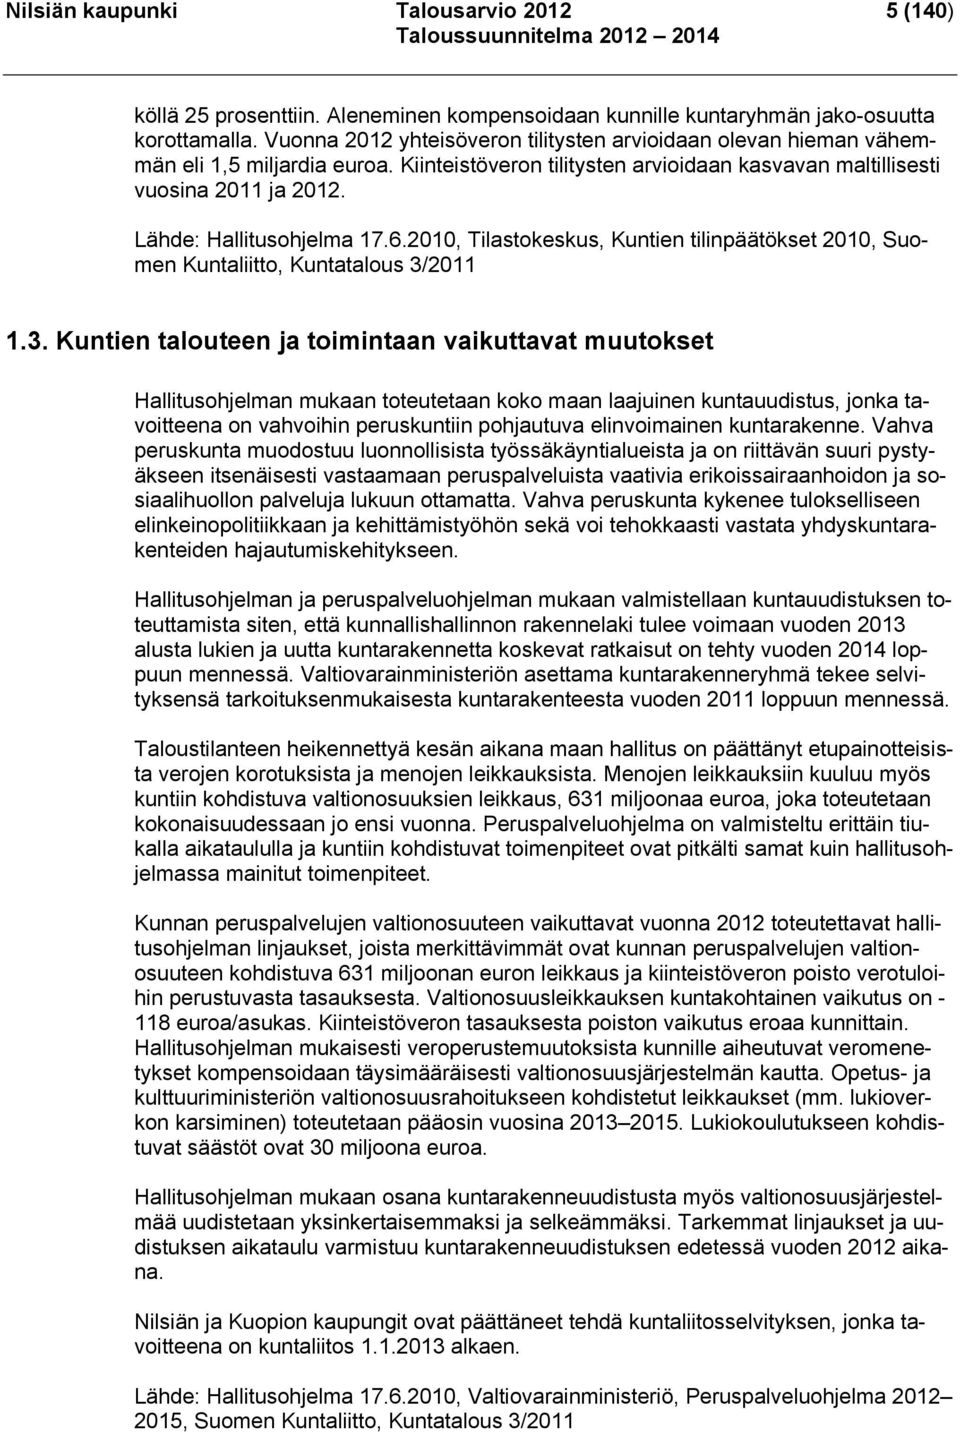 Lähde: Hallitusohjelma 17.6.2010, Tilastokeskus, Kuntien tilinpäätökset 2010, Suomen Kuntaliitto, Kuntatalous 3/